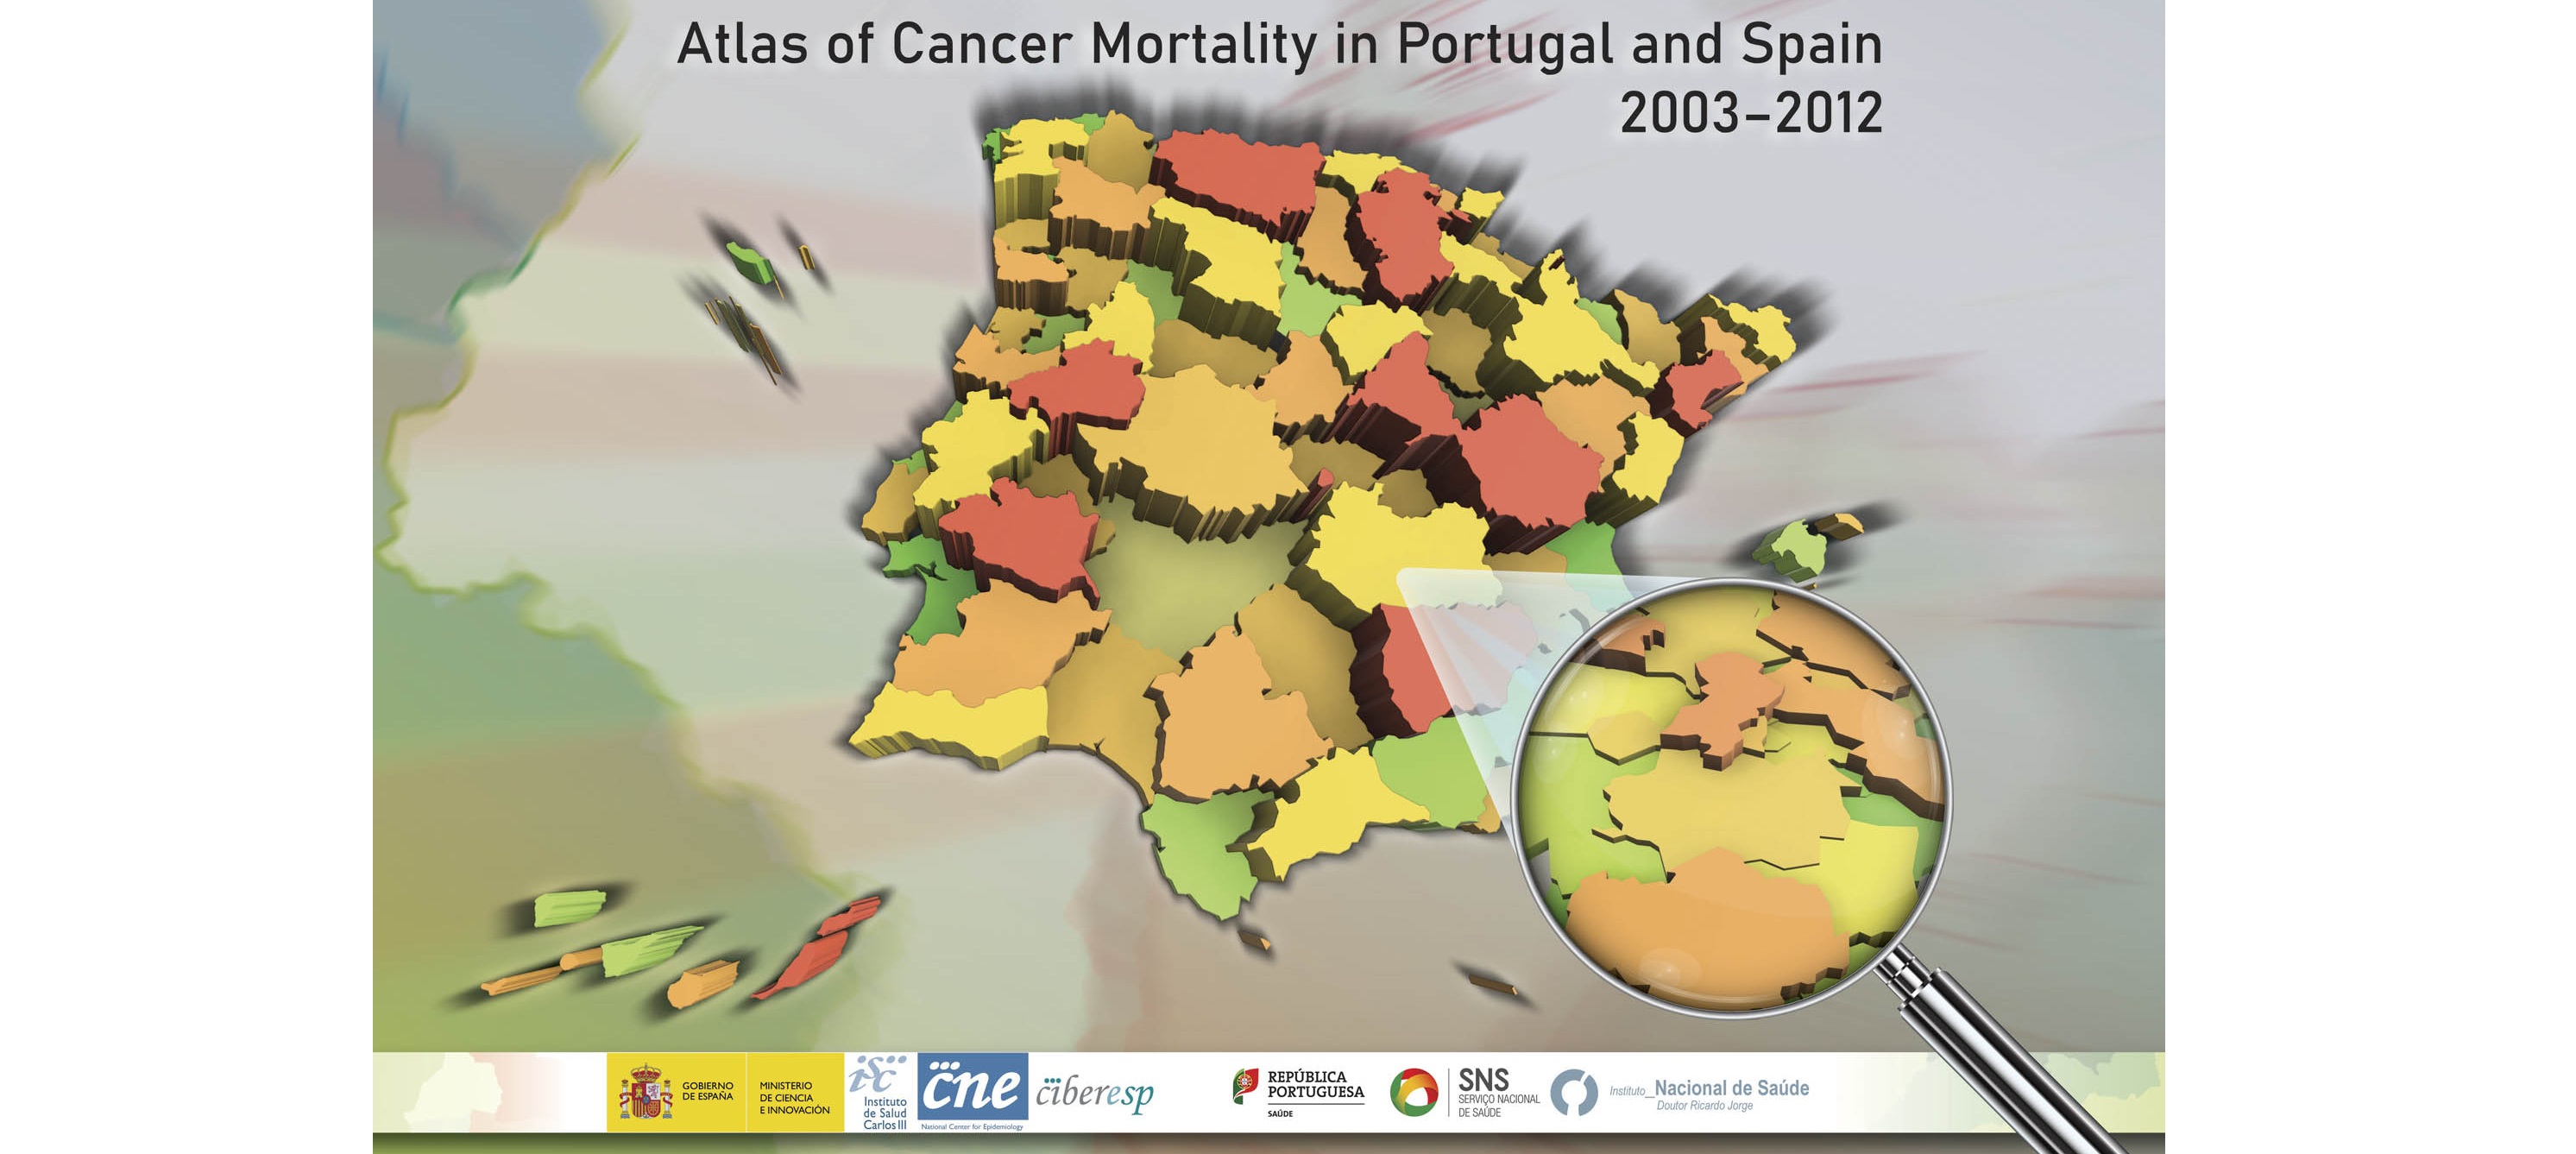 El Atlas de Mortalidad por Cáncer en Portugal y España muestra patrones de riesgo compartidos